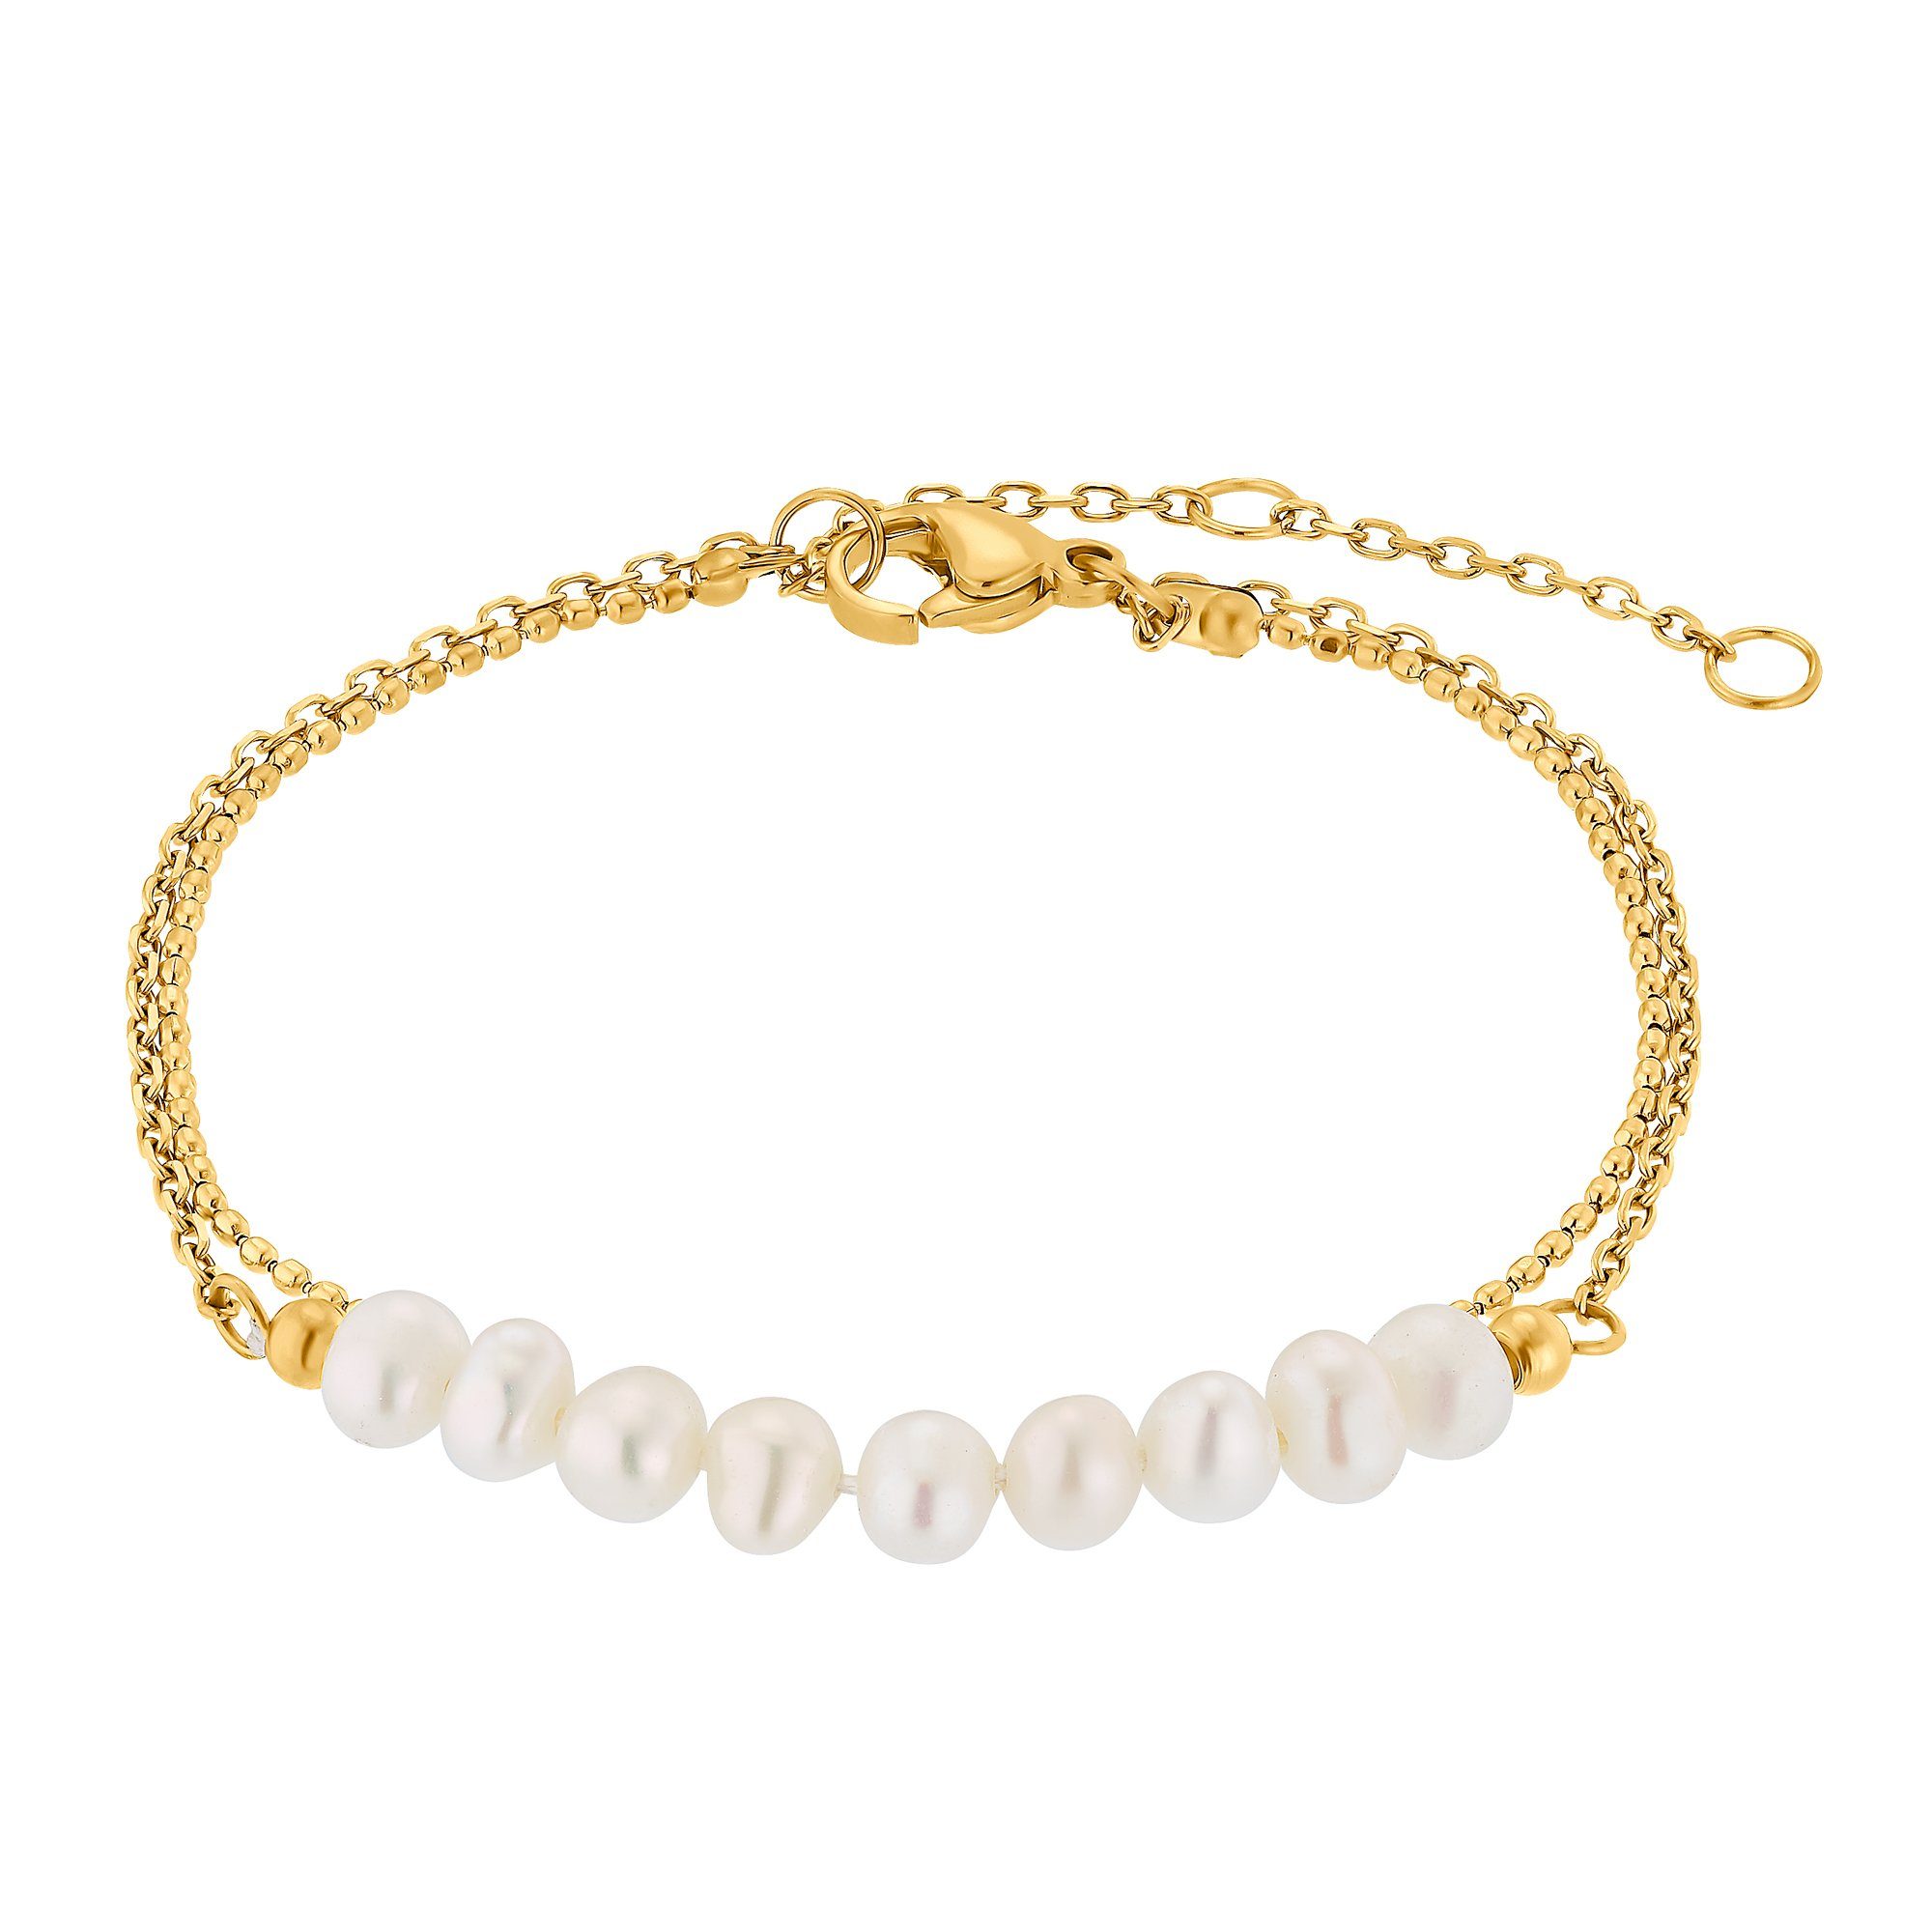 Heideman Armband Jolie silberfarben poliert (Armband, inkl. Geschenkverpackung), Armkette für Frauen mit Perle goldfarben